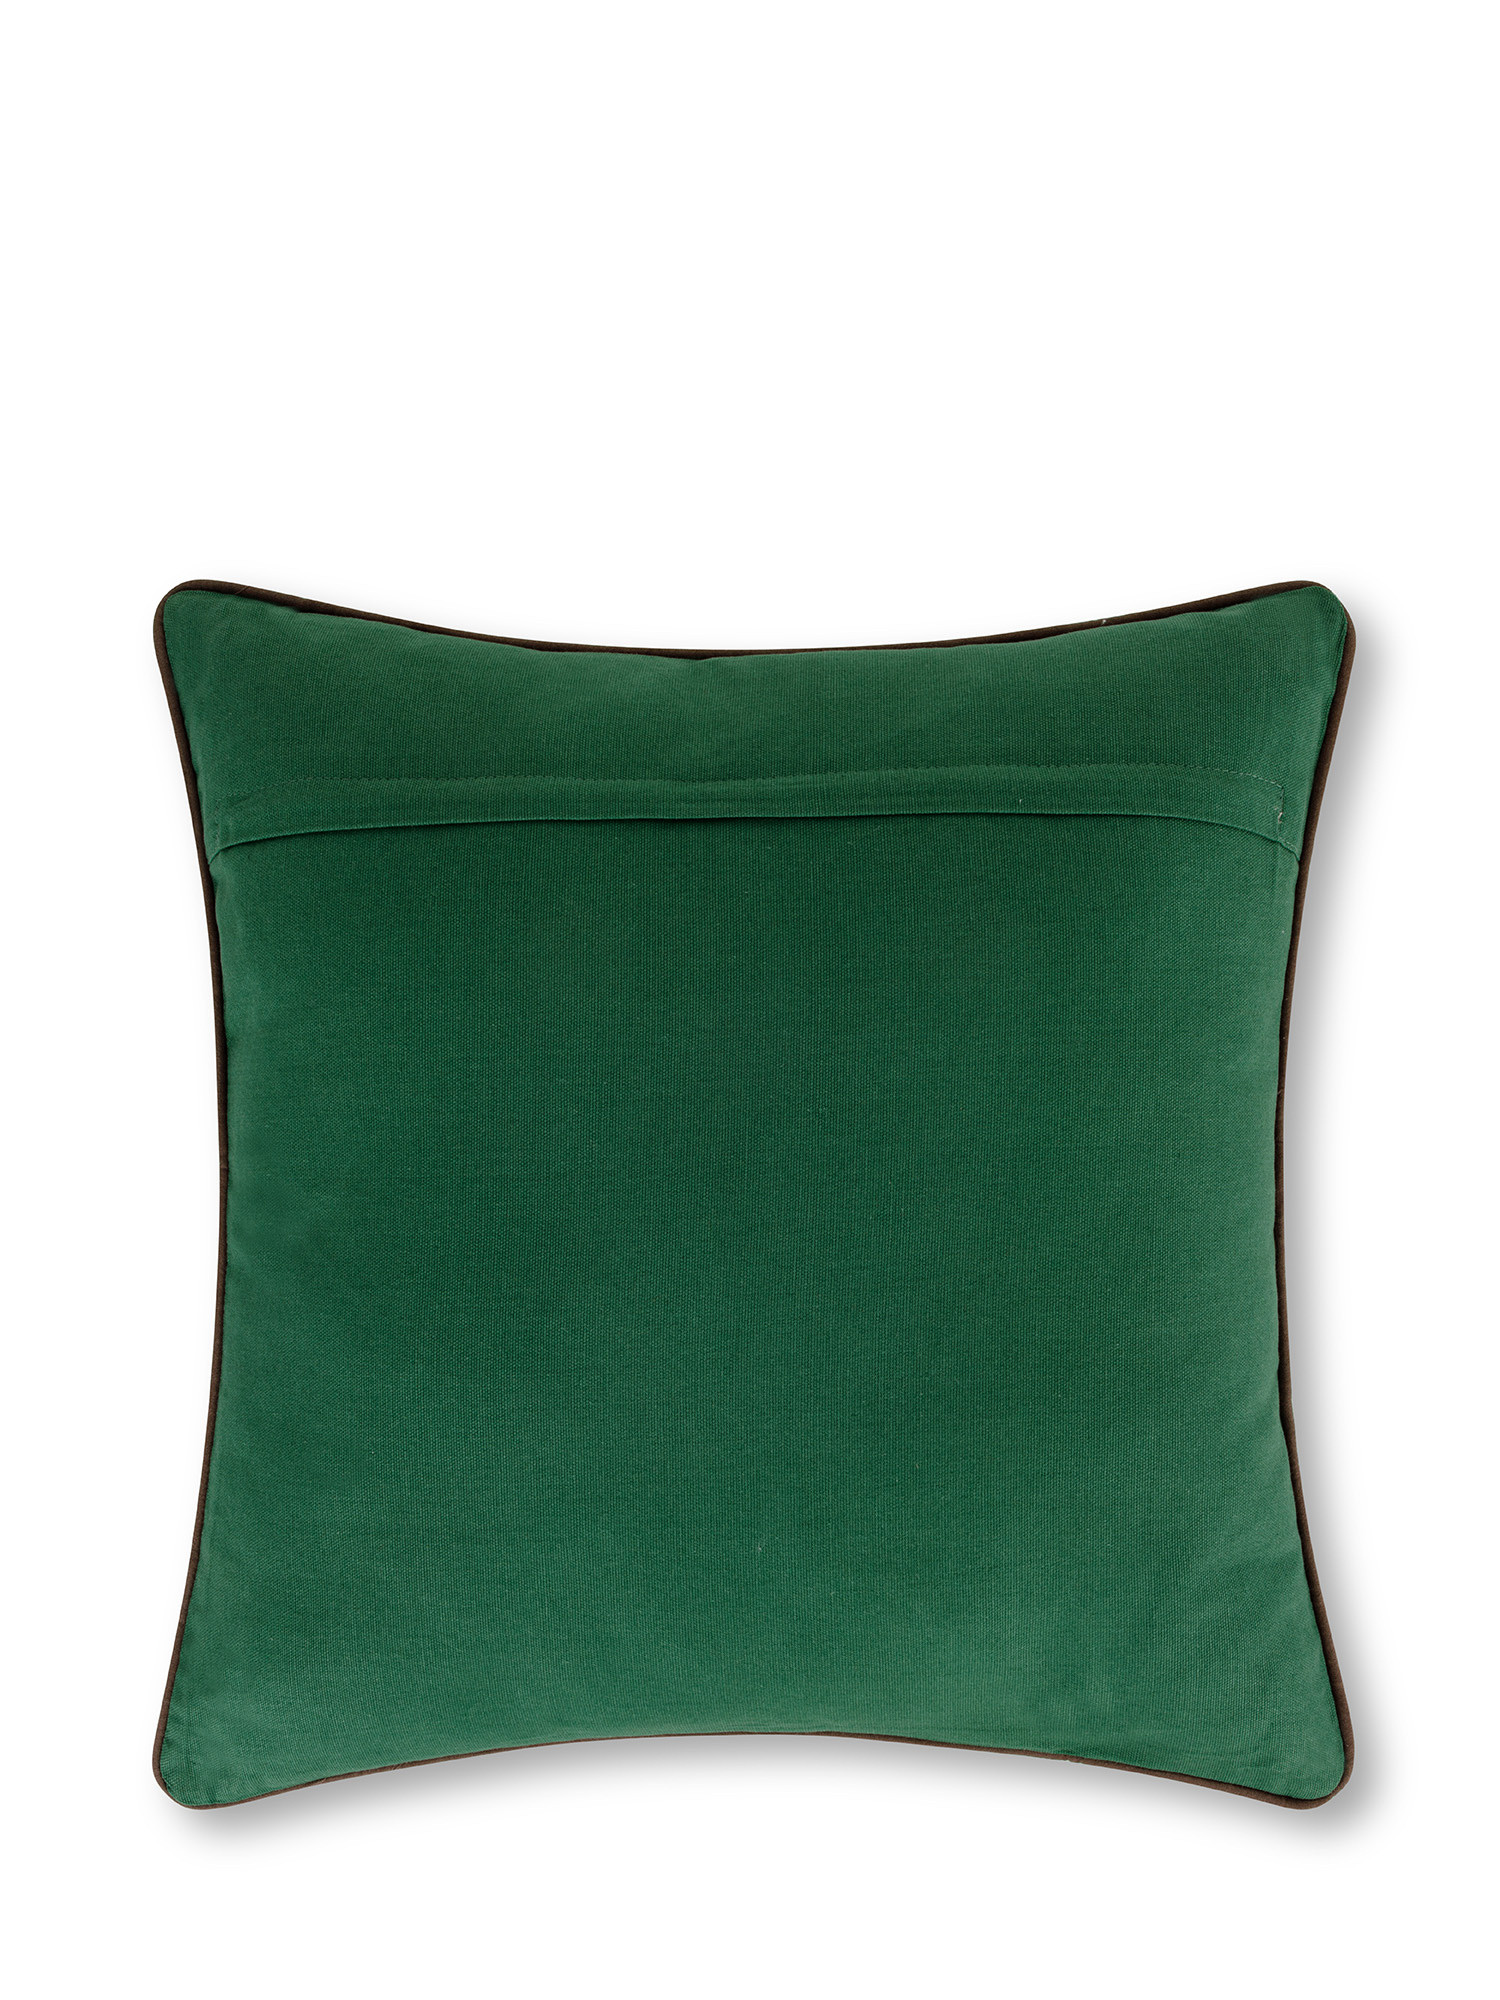 Cuscino ricamato pigne e foglie 45x45 cm, Multicolor, large image number 1